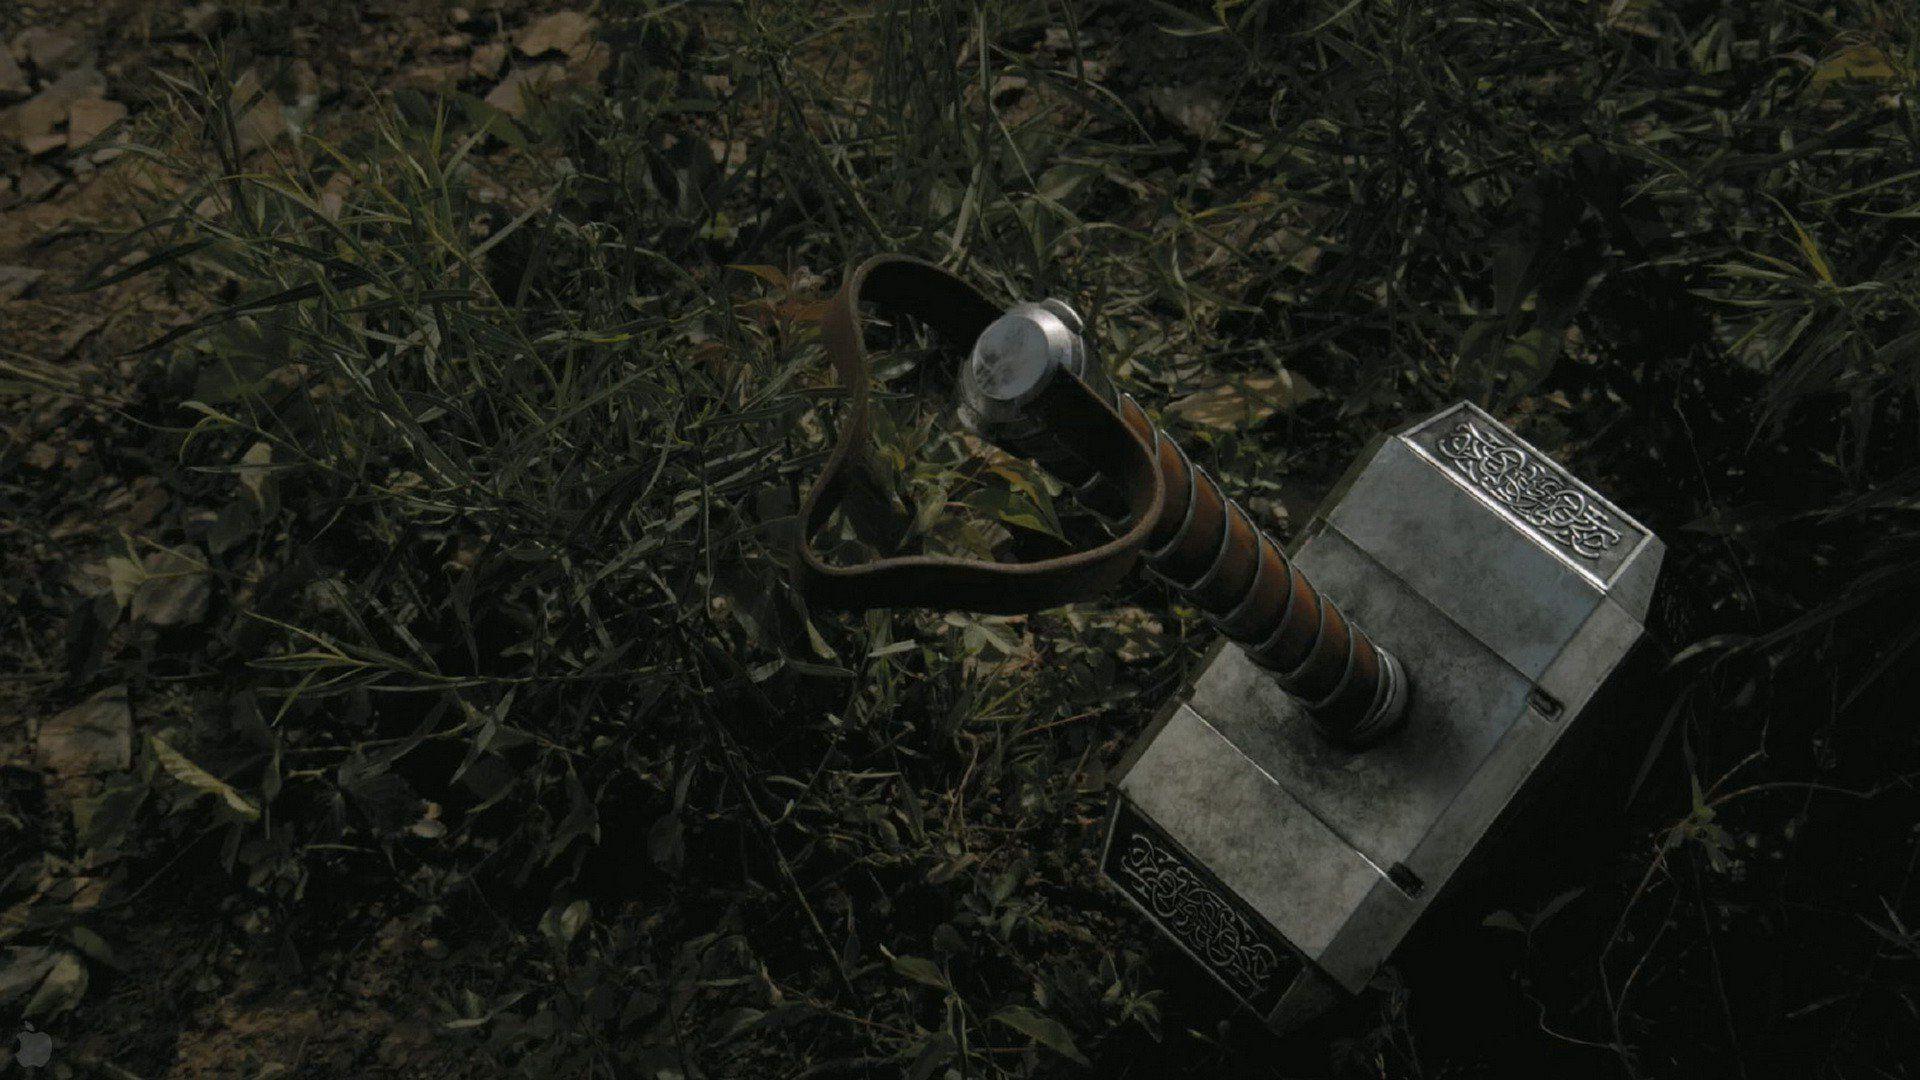 Mjolnir The Hammer Of Thor